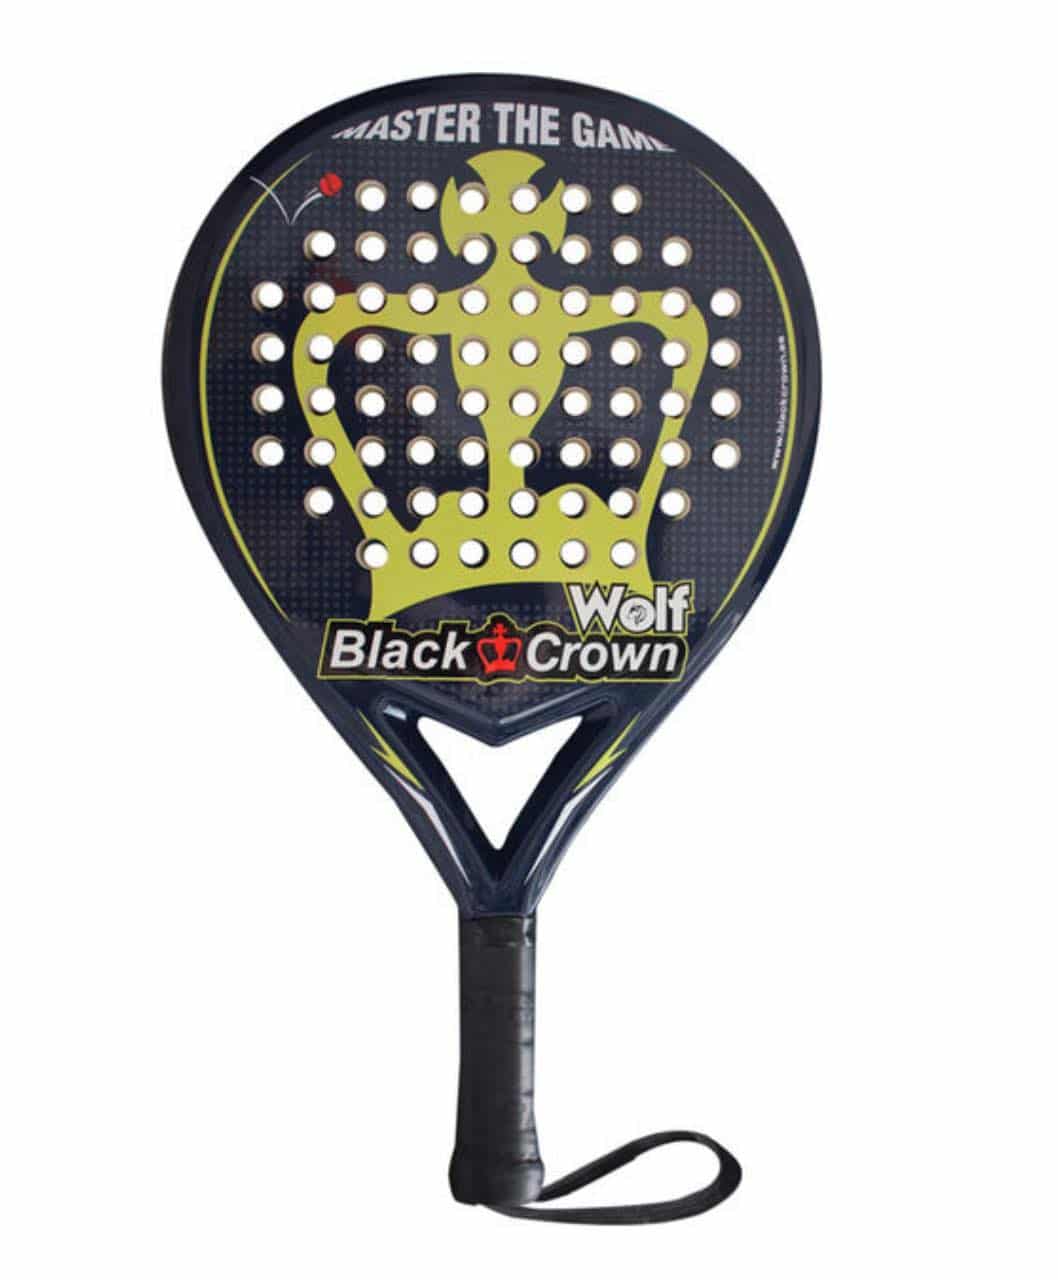 Black Crown padel racket product image